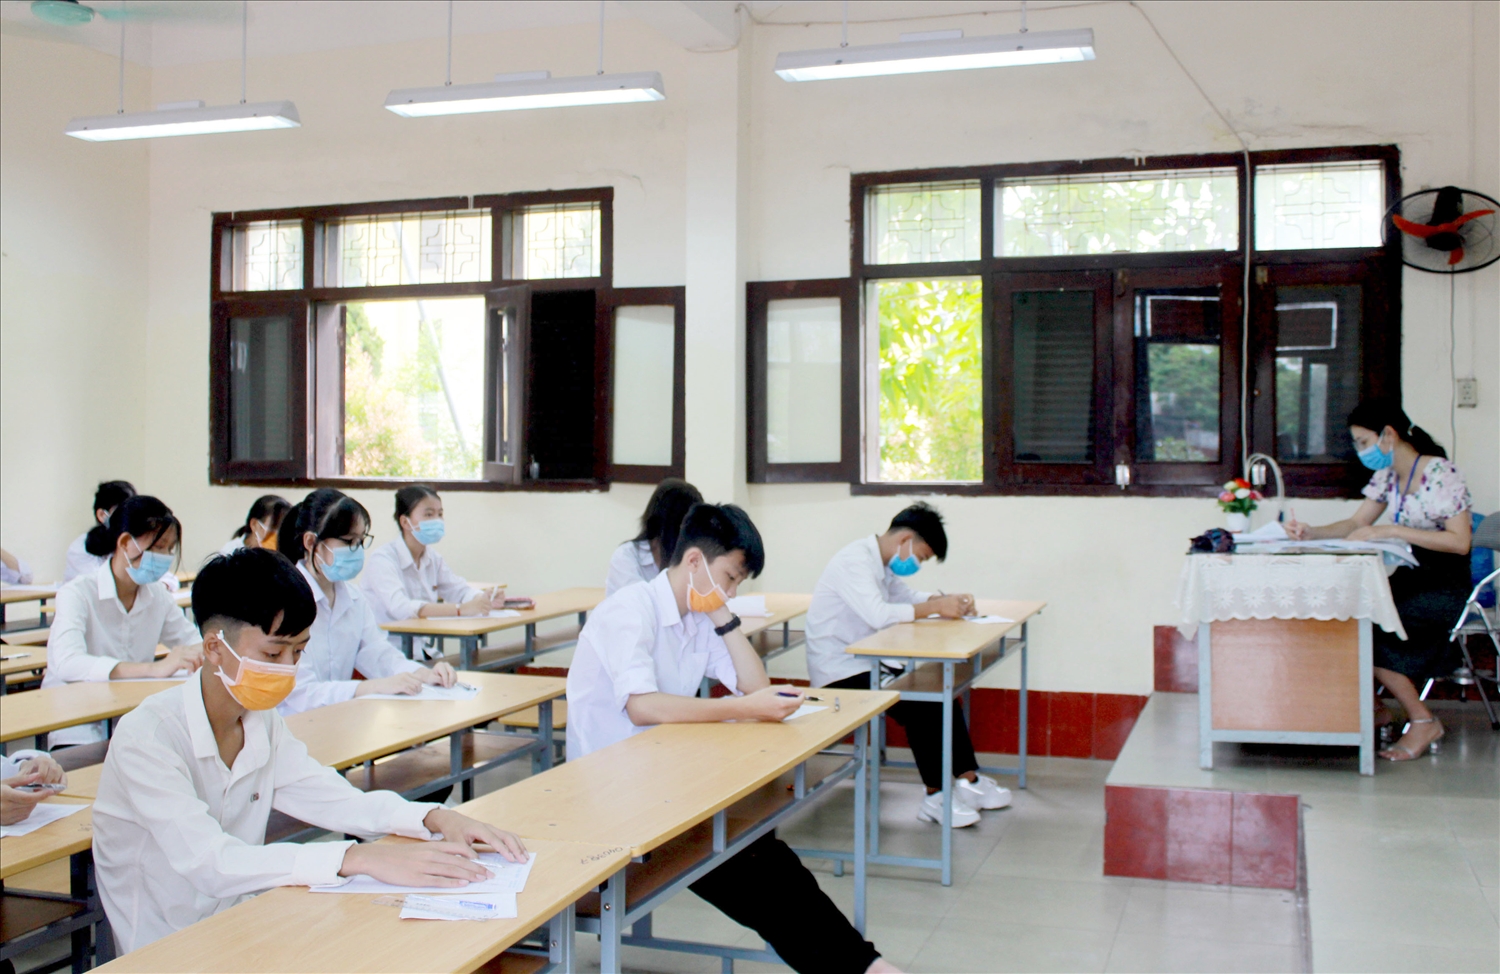 VIDEO: Phó chủ tịch UBND tỉnh kiểm tra thi tuyển sinh lớp 10 THPT tại TPHD và huyện Ninh Giang